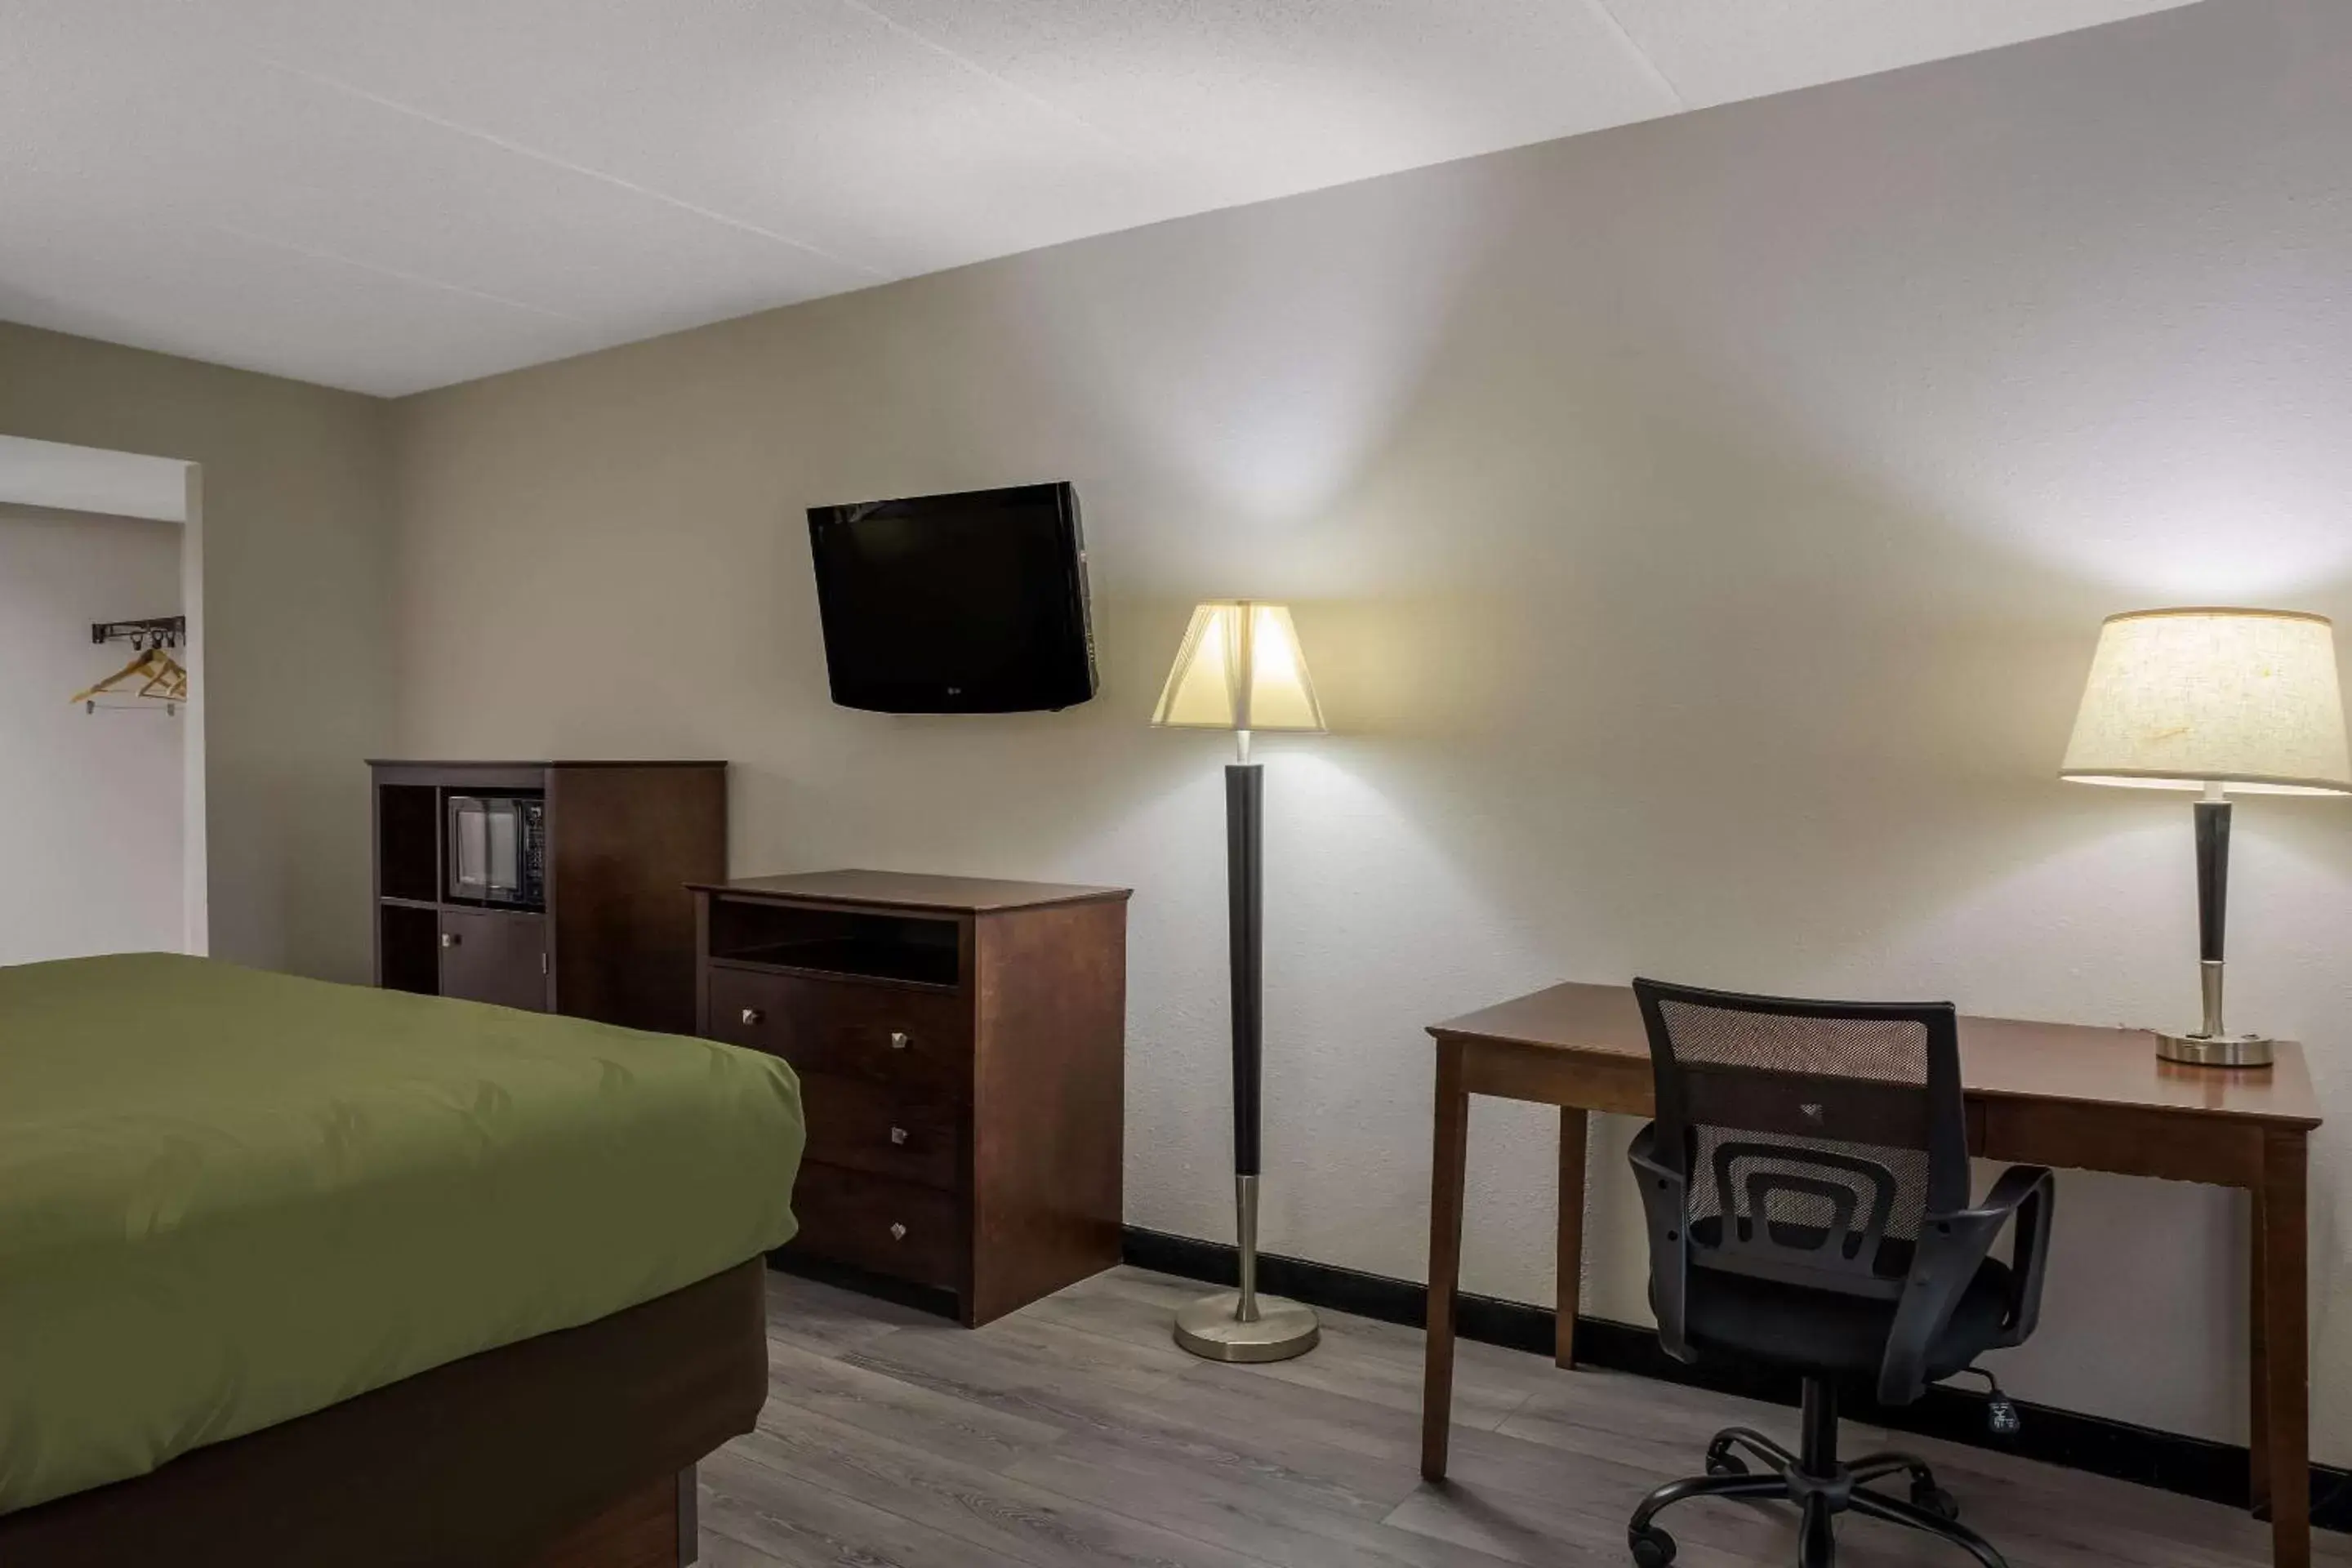 Bedroom, TV/Entertainment Center in Quality Inn Toledo